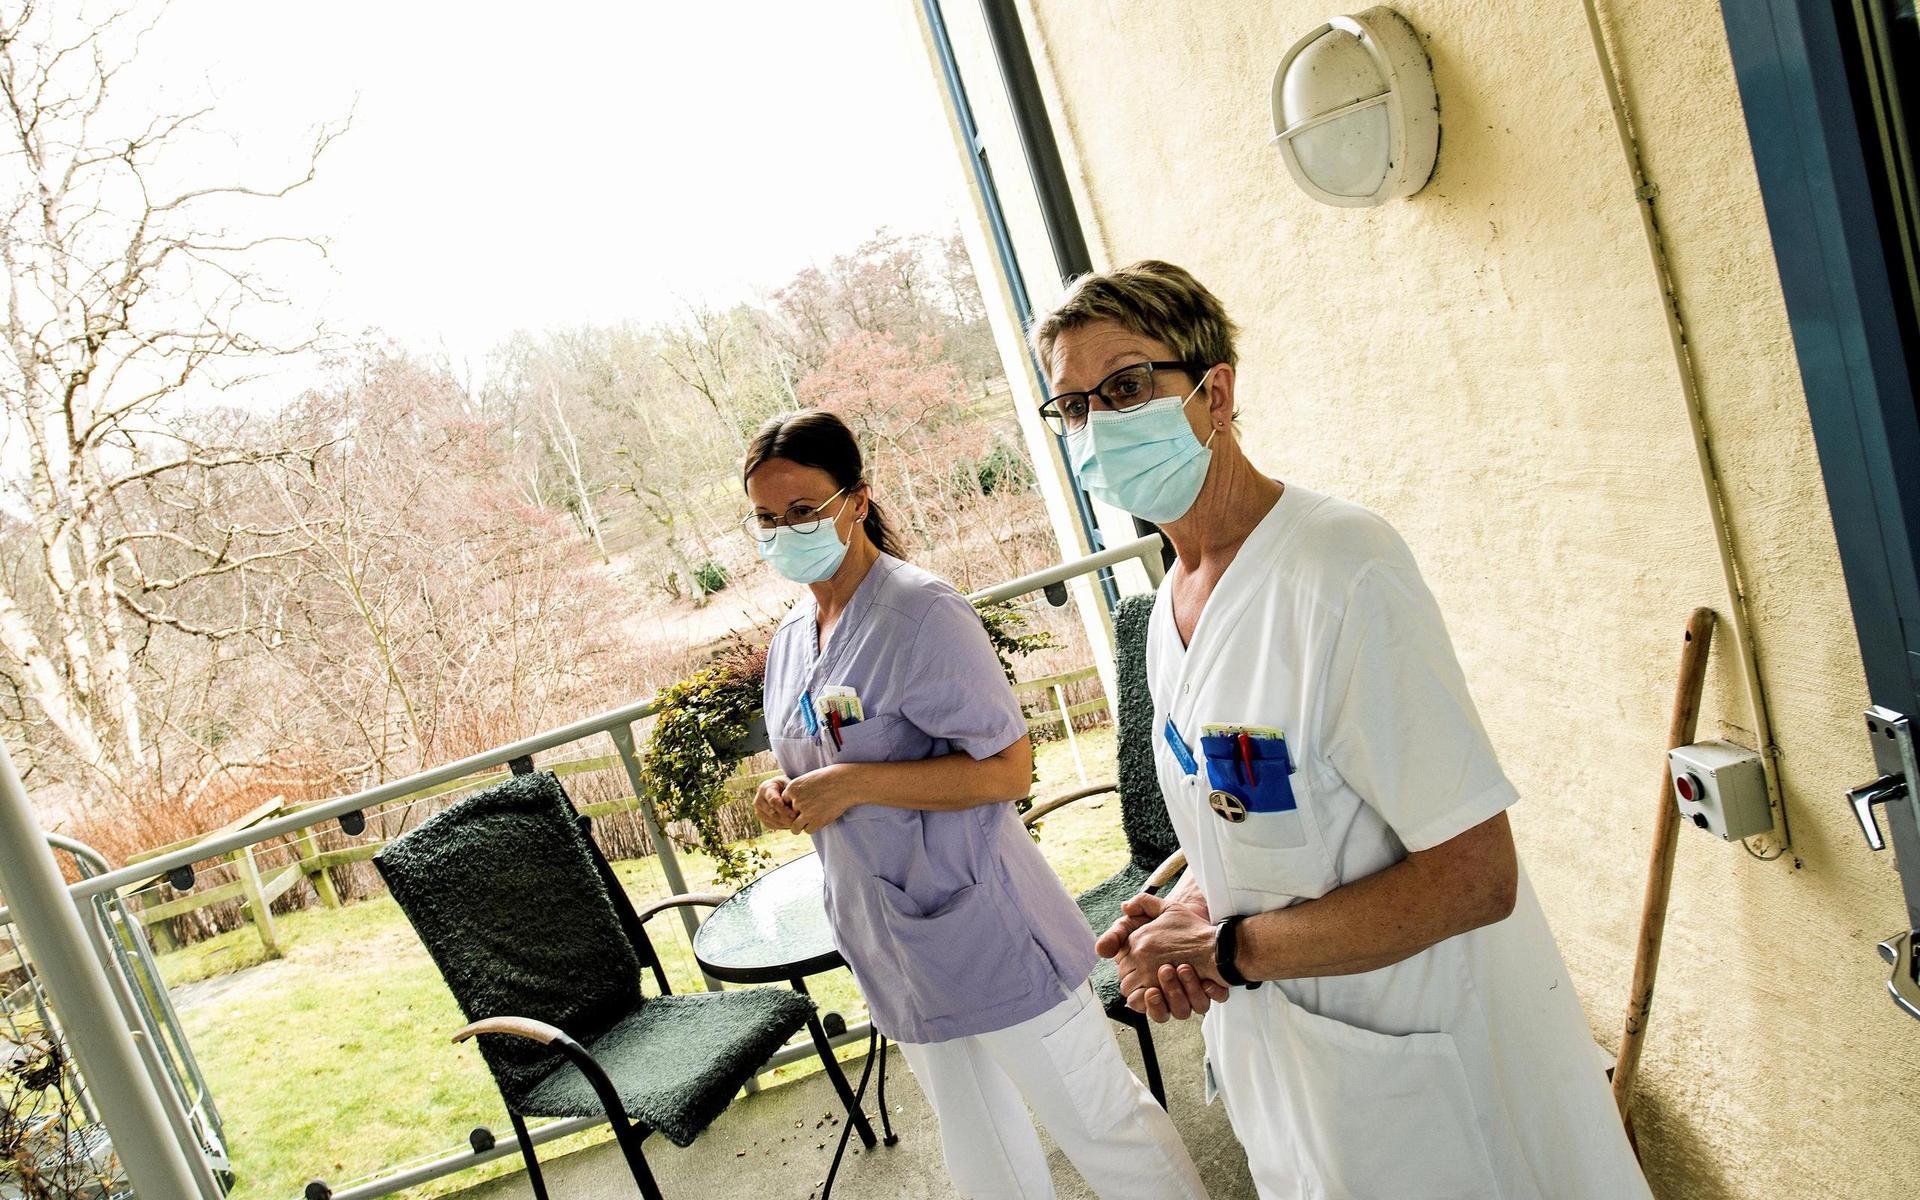 Johanna Lekies, undersköterska, och Carina Karlsson, sjuksköterska, arbetar på palliativa vårdavdelningen i Falkenberg.